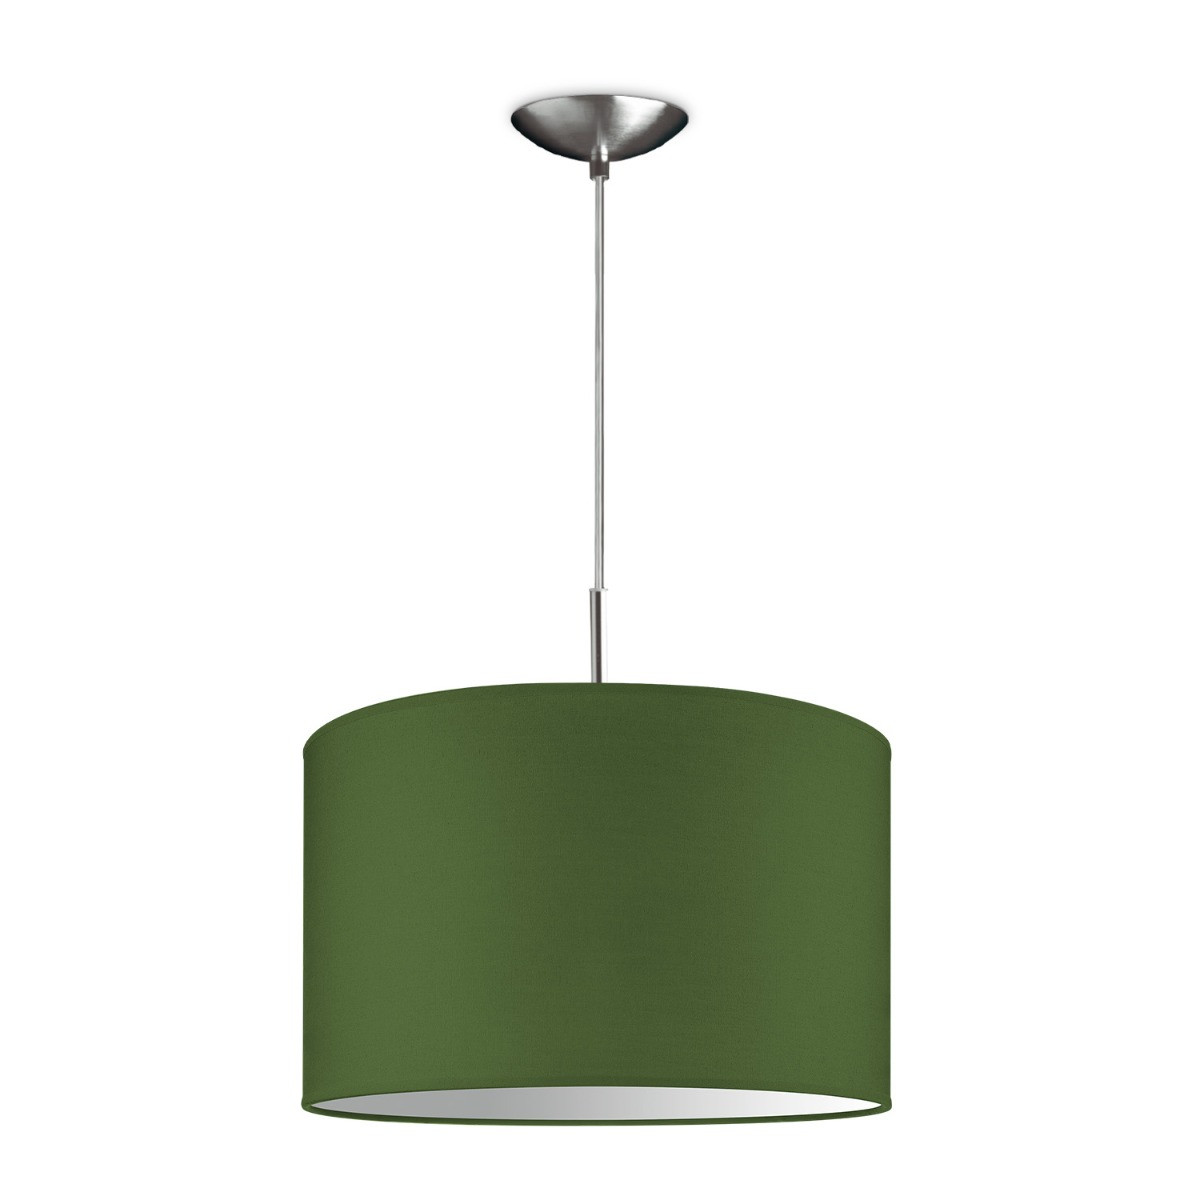 Light depot - hanglamp tube deluxe bling Ø 35 cm - groen - Outlet